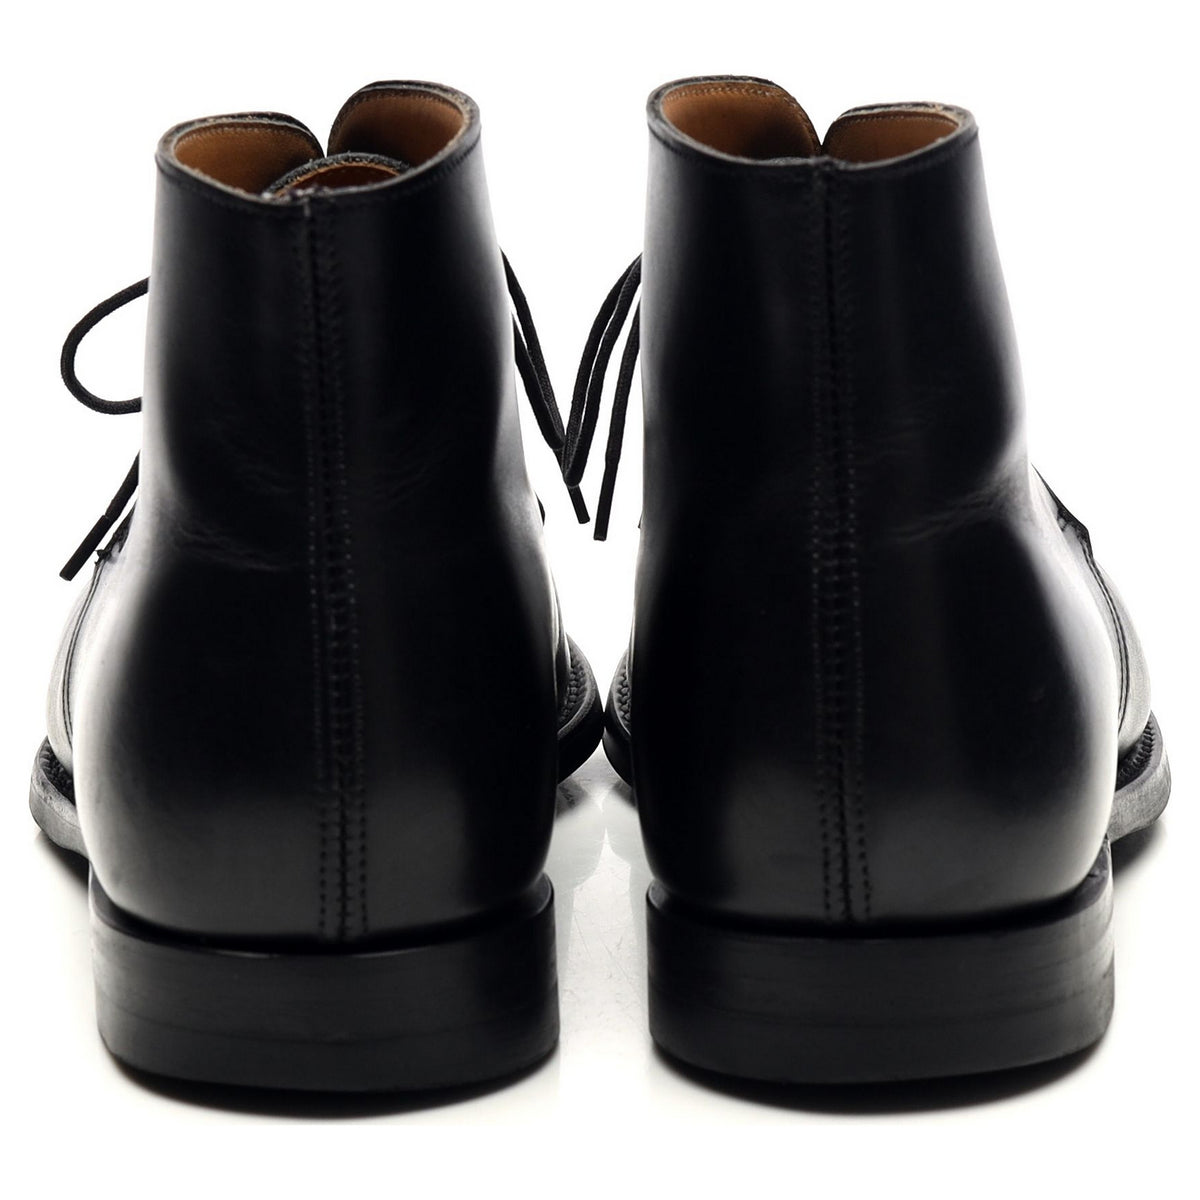 &#39;Upton&#39; Black Leather Chukka Boots UK 6.5 E